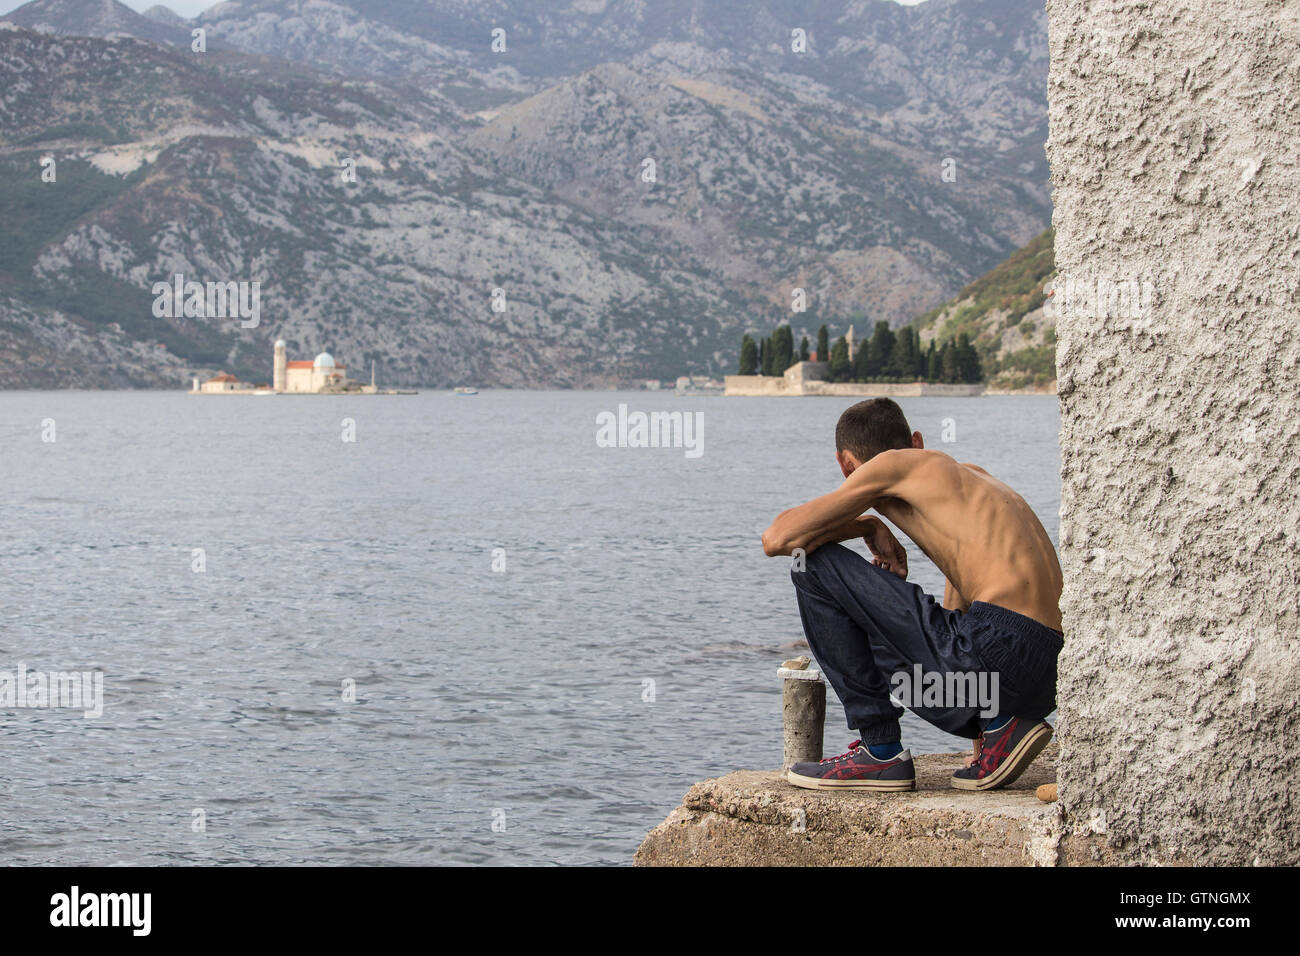 La bahía de Kotor, Montenegro - Skinny hombre agachado hacia abajo a la orilla del mar observa el islote virgen de las rocas (Gospa od Skrpjela) Foto de stock